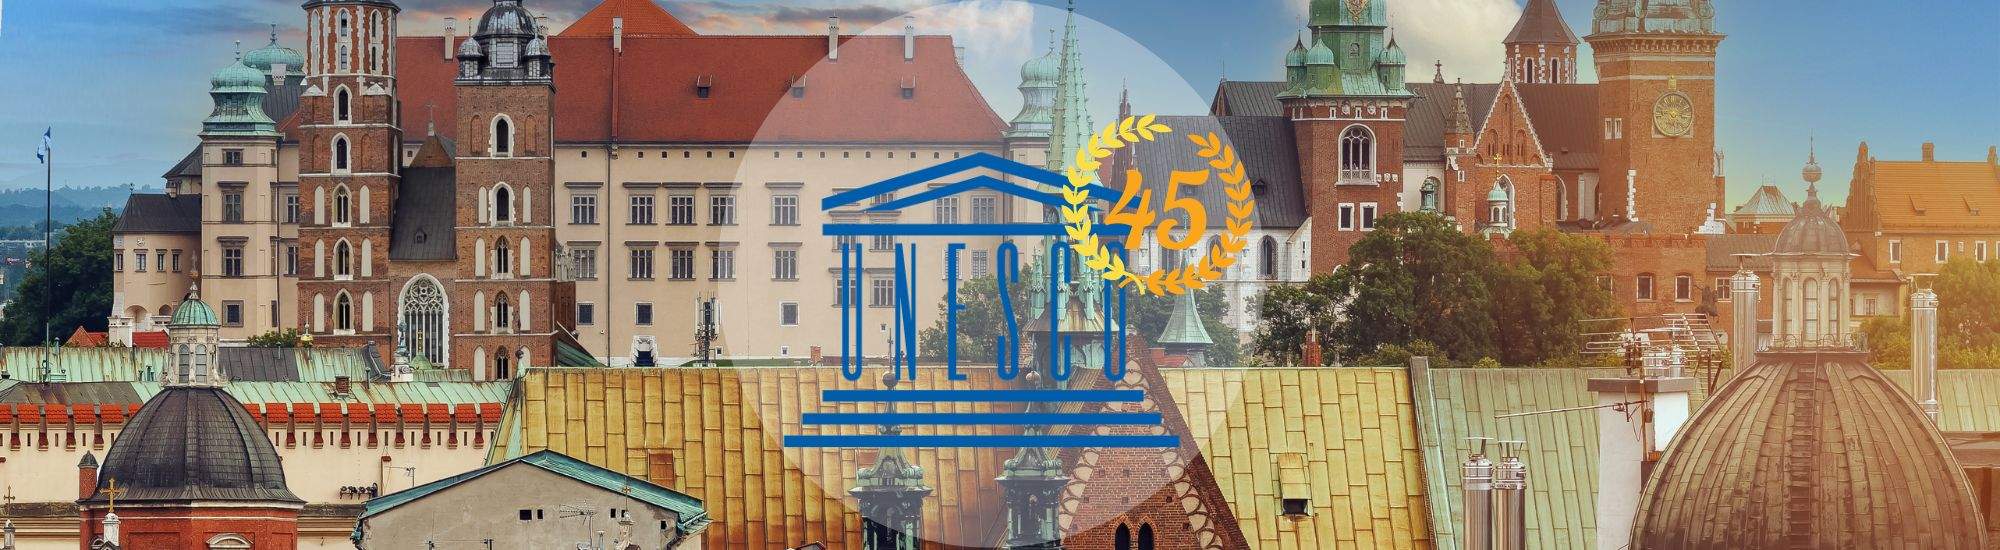 Cracovia celebra el 45º aniversario de su inclusión en la Lista de Patrimonio Mundial de la UNESCO